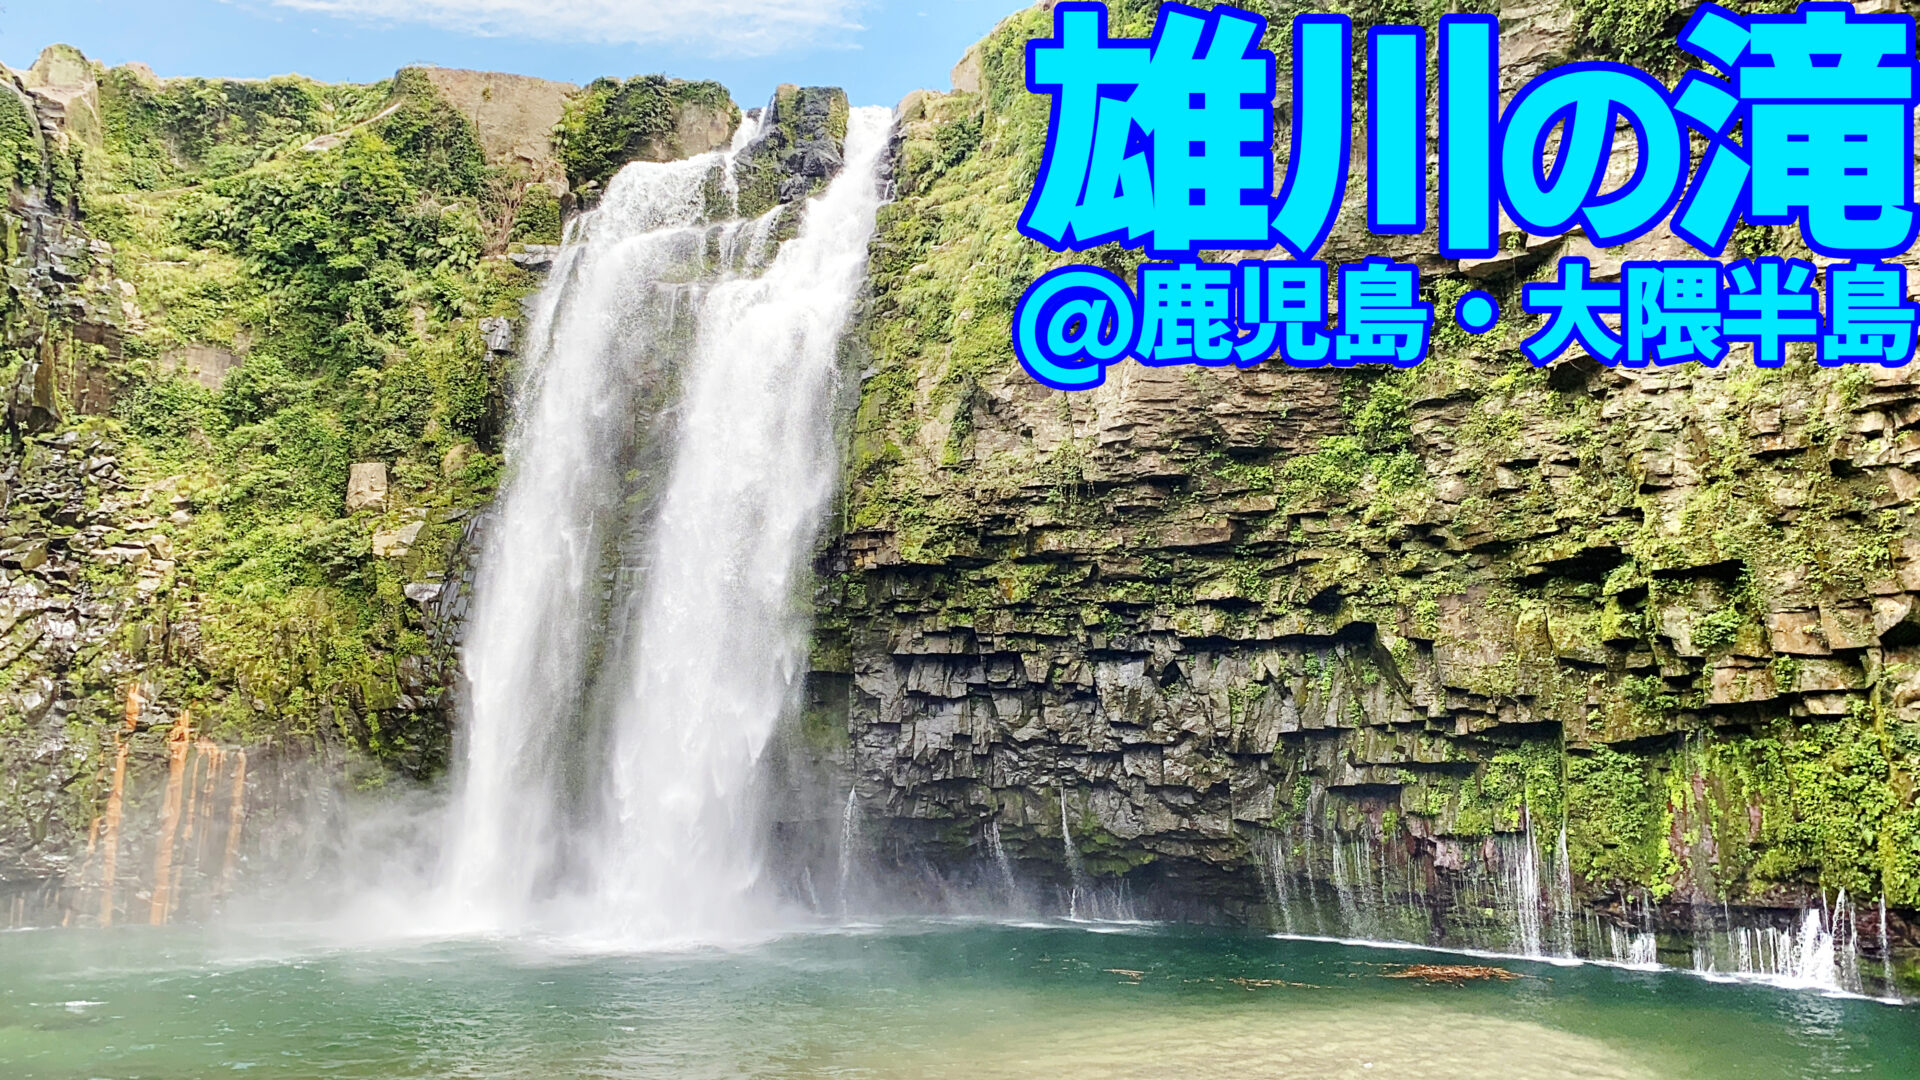 鹿児島の絶景・雄川の滝に行ってきた 行き方や周辺施設などを紹介